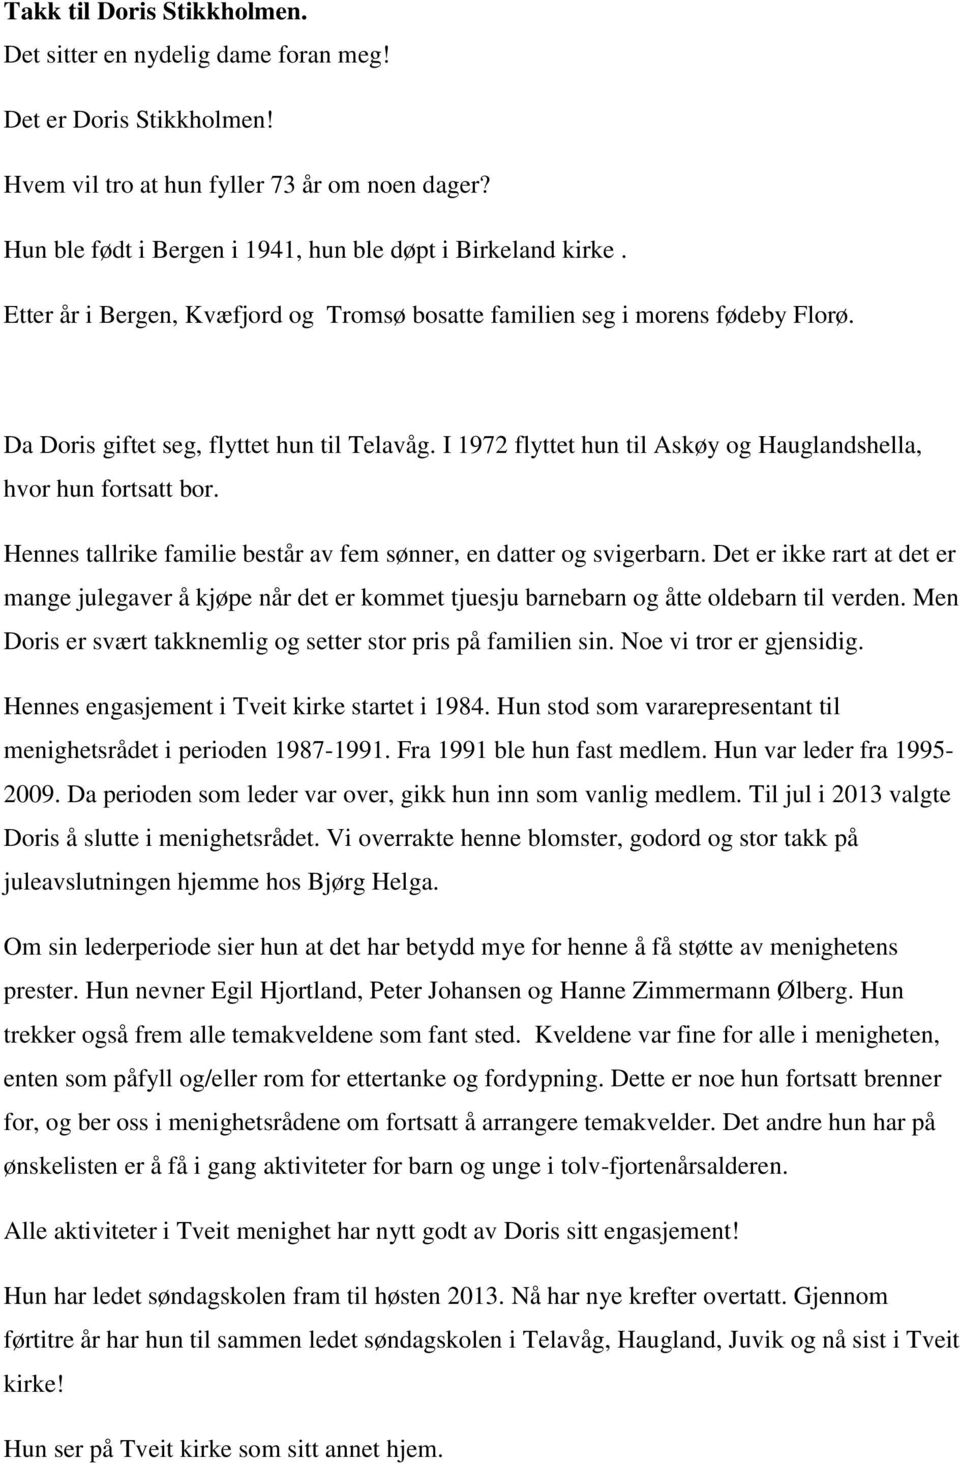 I 1972 flyttet hun til Askøy og Hauglandshella, hvor hun fortsatt bor. Hennes tallrike familie består av fem sønner, en datter og svigerbarn.